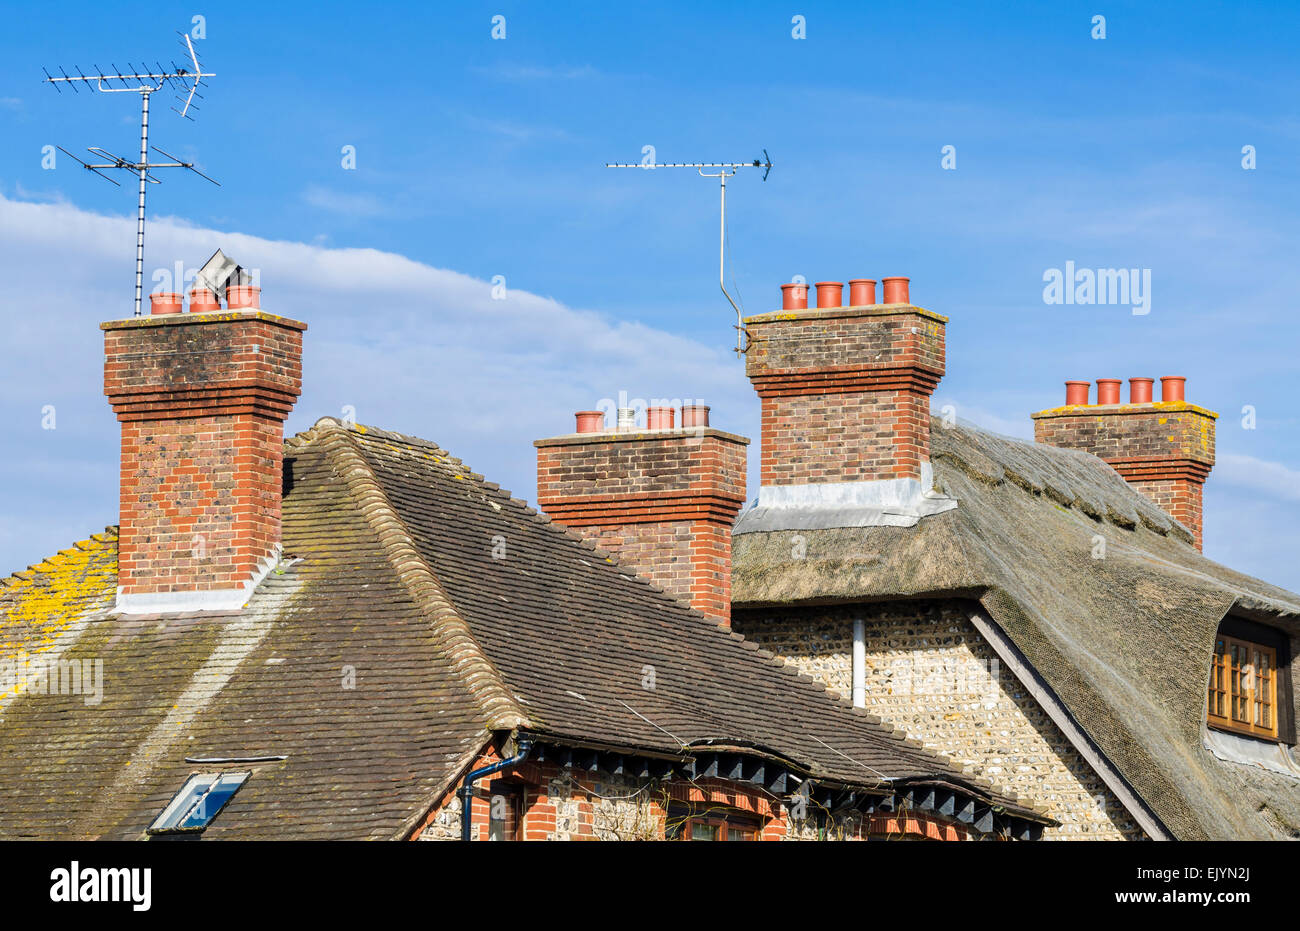 Mattone rosso ciminiere sul tetto in paglia ed i tetti in Inghilterra, Regno Unito. Foto Stock